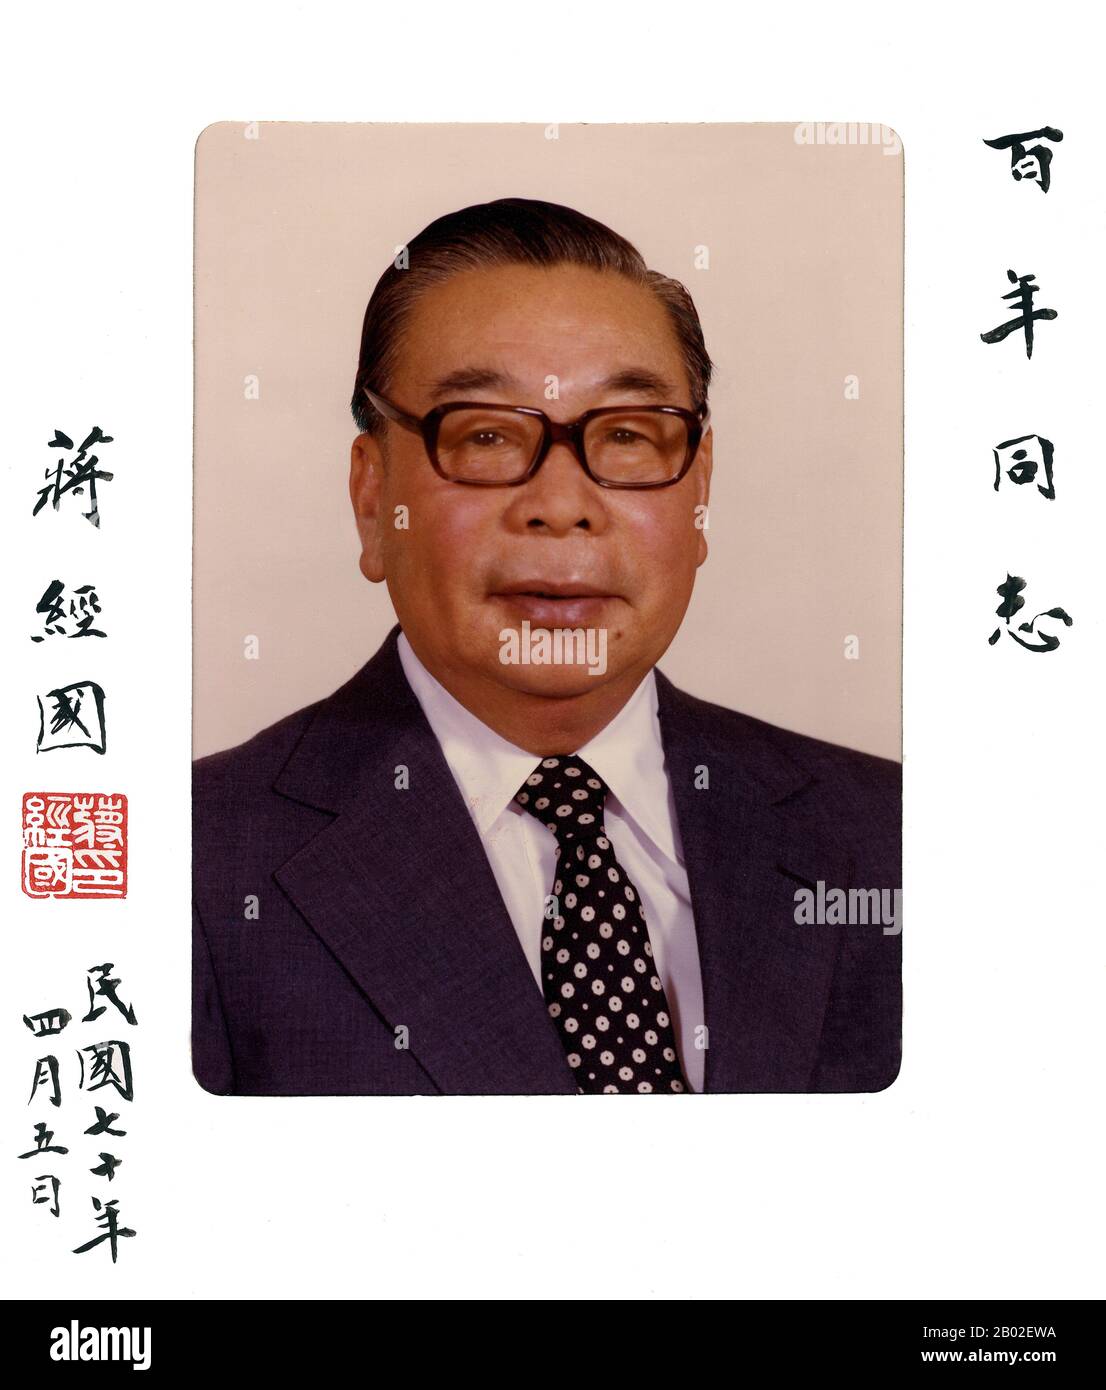 Chiang Ching-kuo (蔣經國) (27 aprile 1910 – 13 gennaio 1988), politico e leader di Kuomintang (KMT), è stato figlio di Generalissimo e presidente Chiang Kai-shek e ha ricoperto numerosi incarichi nel governo della Repubblica di Cina (ROC). Successe al padre come Premier della Repubblica di Cina tra il 1972 e il 1978, e fu Presidente della Repubblica di Cina dal 1978 alla sua morte nel 1988. Sotto il suo mandato, il governo della Repubblica di Cina, pur autoritario, è diventato più aperto e tollerante del dissenso politico. Verso la fine della sua vita, Chiang rilassato governo con Foto Stock